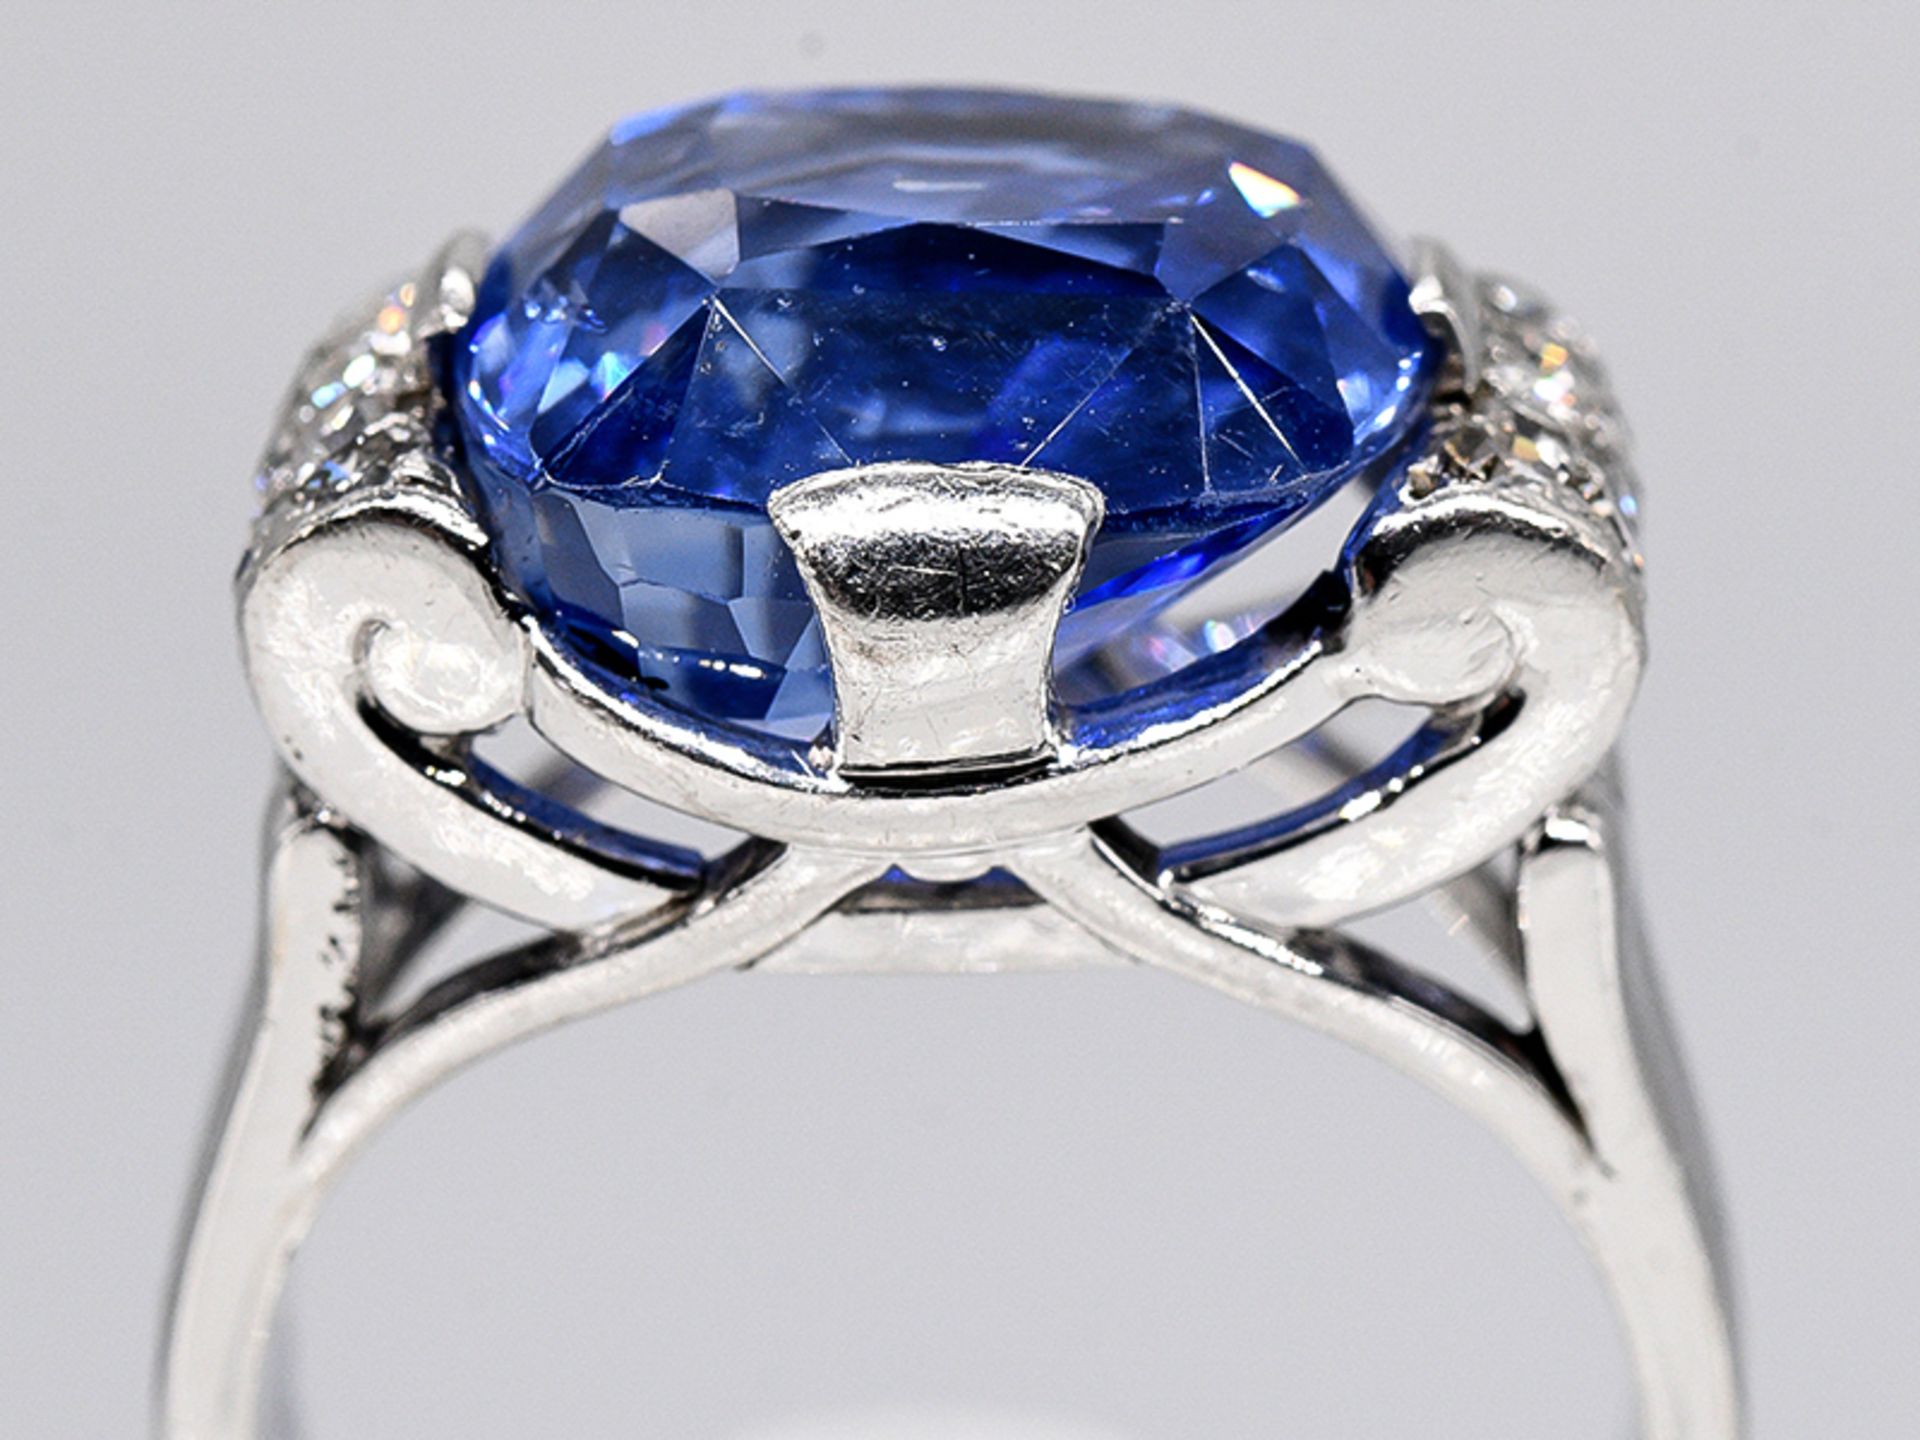 Massiver Ring mit Ceylon-Saphir ca. 15,19 ct und Achtkant-Diamanten, zus. ca. 0,5 ct, Juweliersarbe - Image 4 of 14